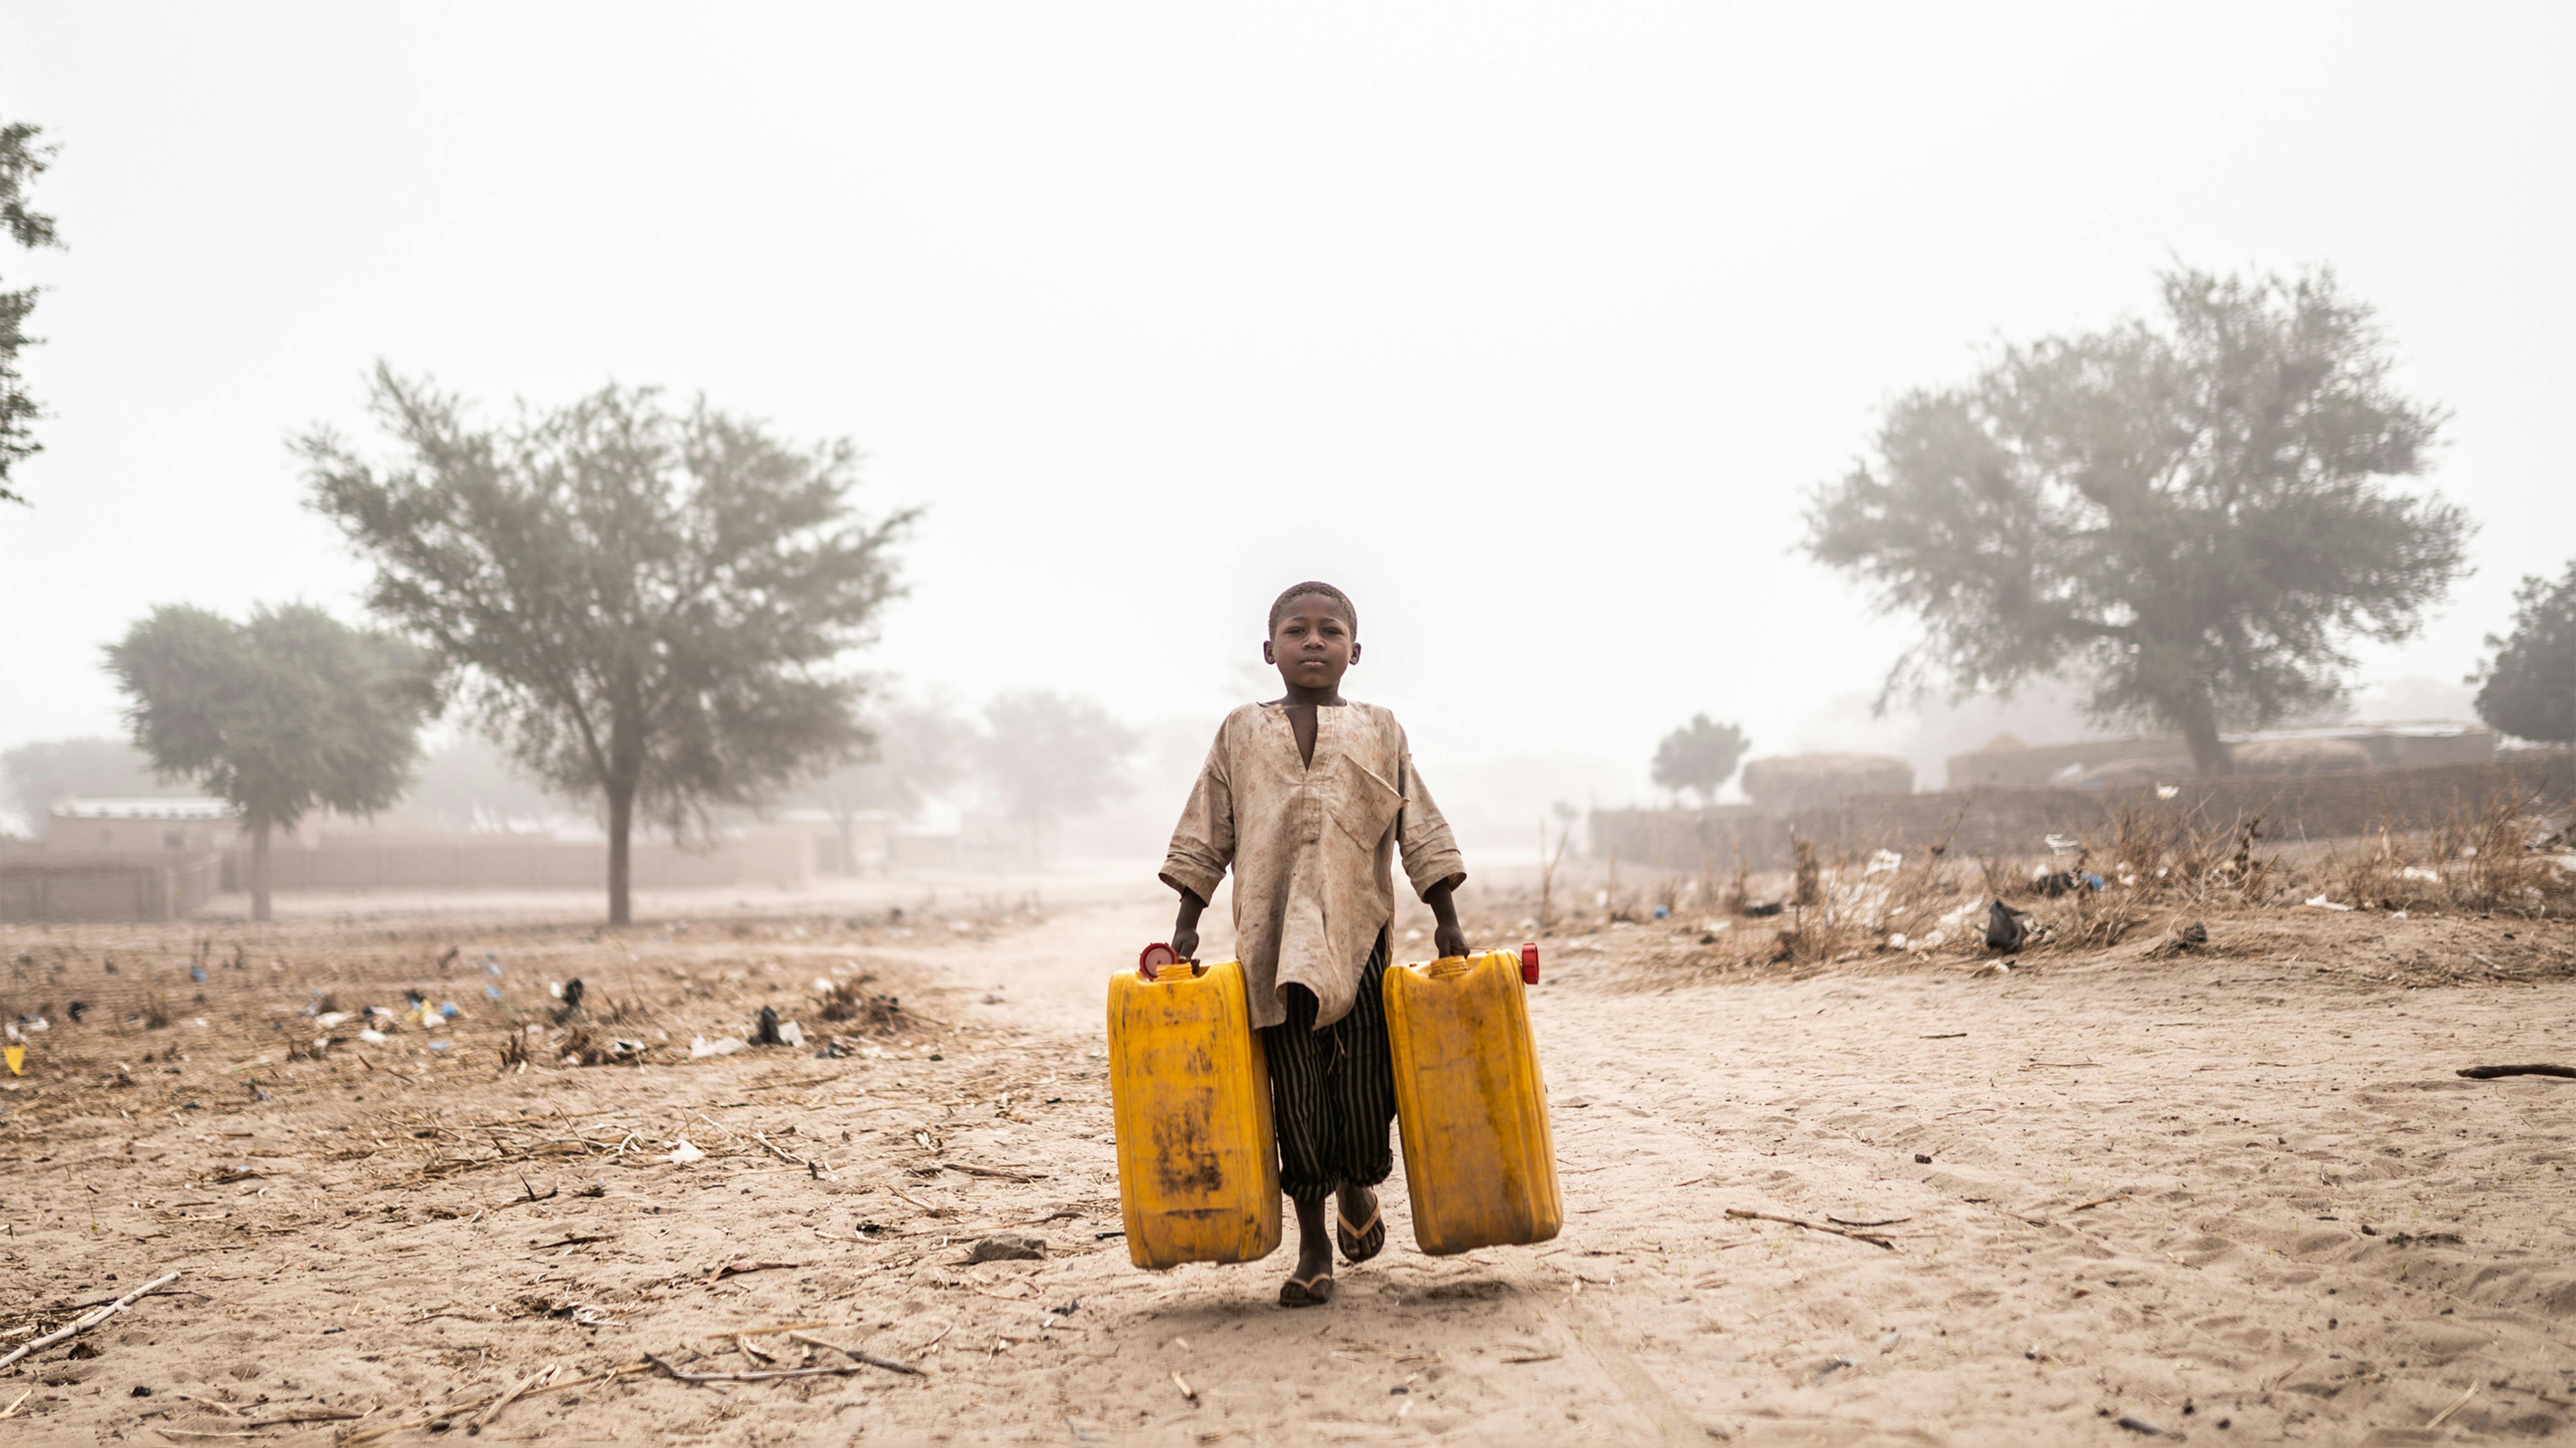 L'accesso all'acqua potabile e ai servizi igienici è ancora molto basso in Niger, con grandi disparità tra le aree urbane e rurali